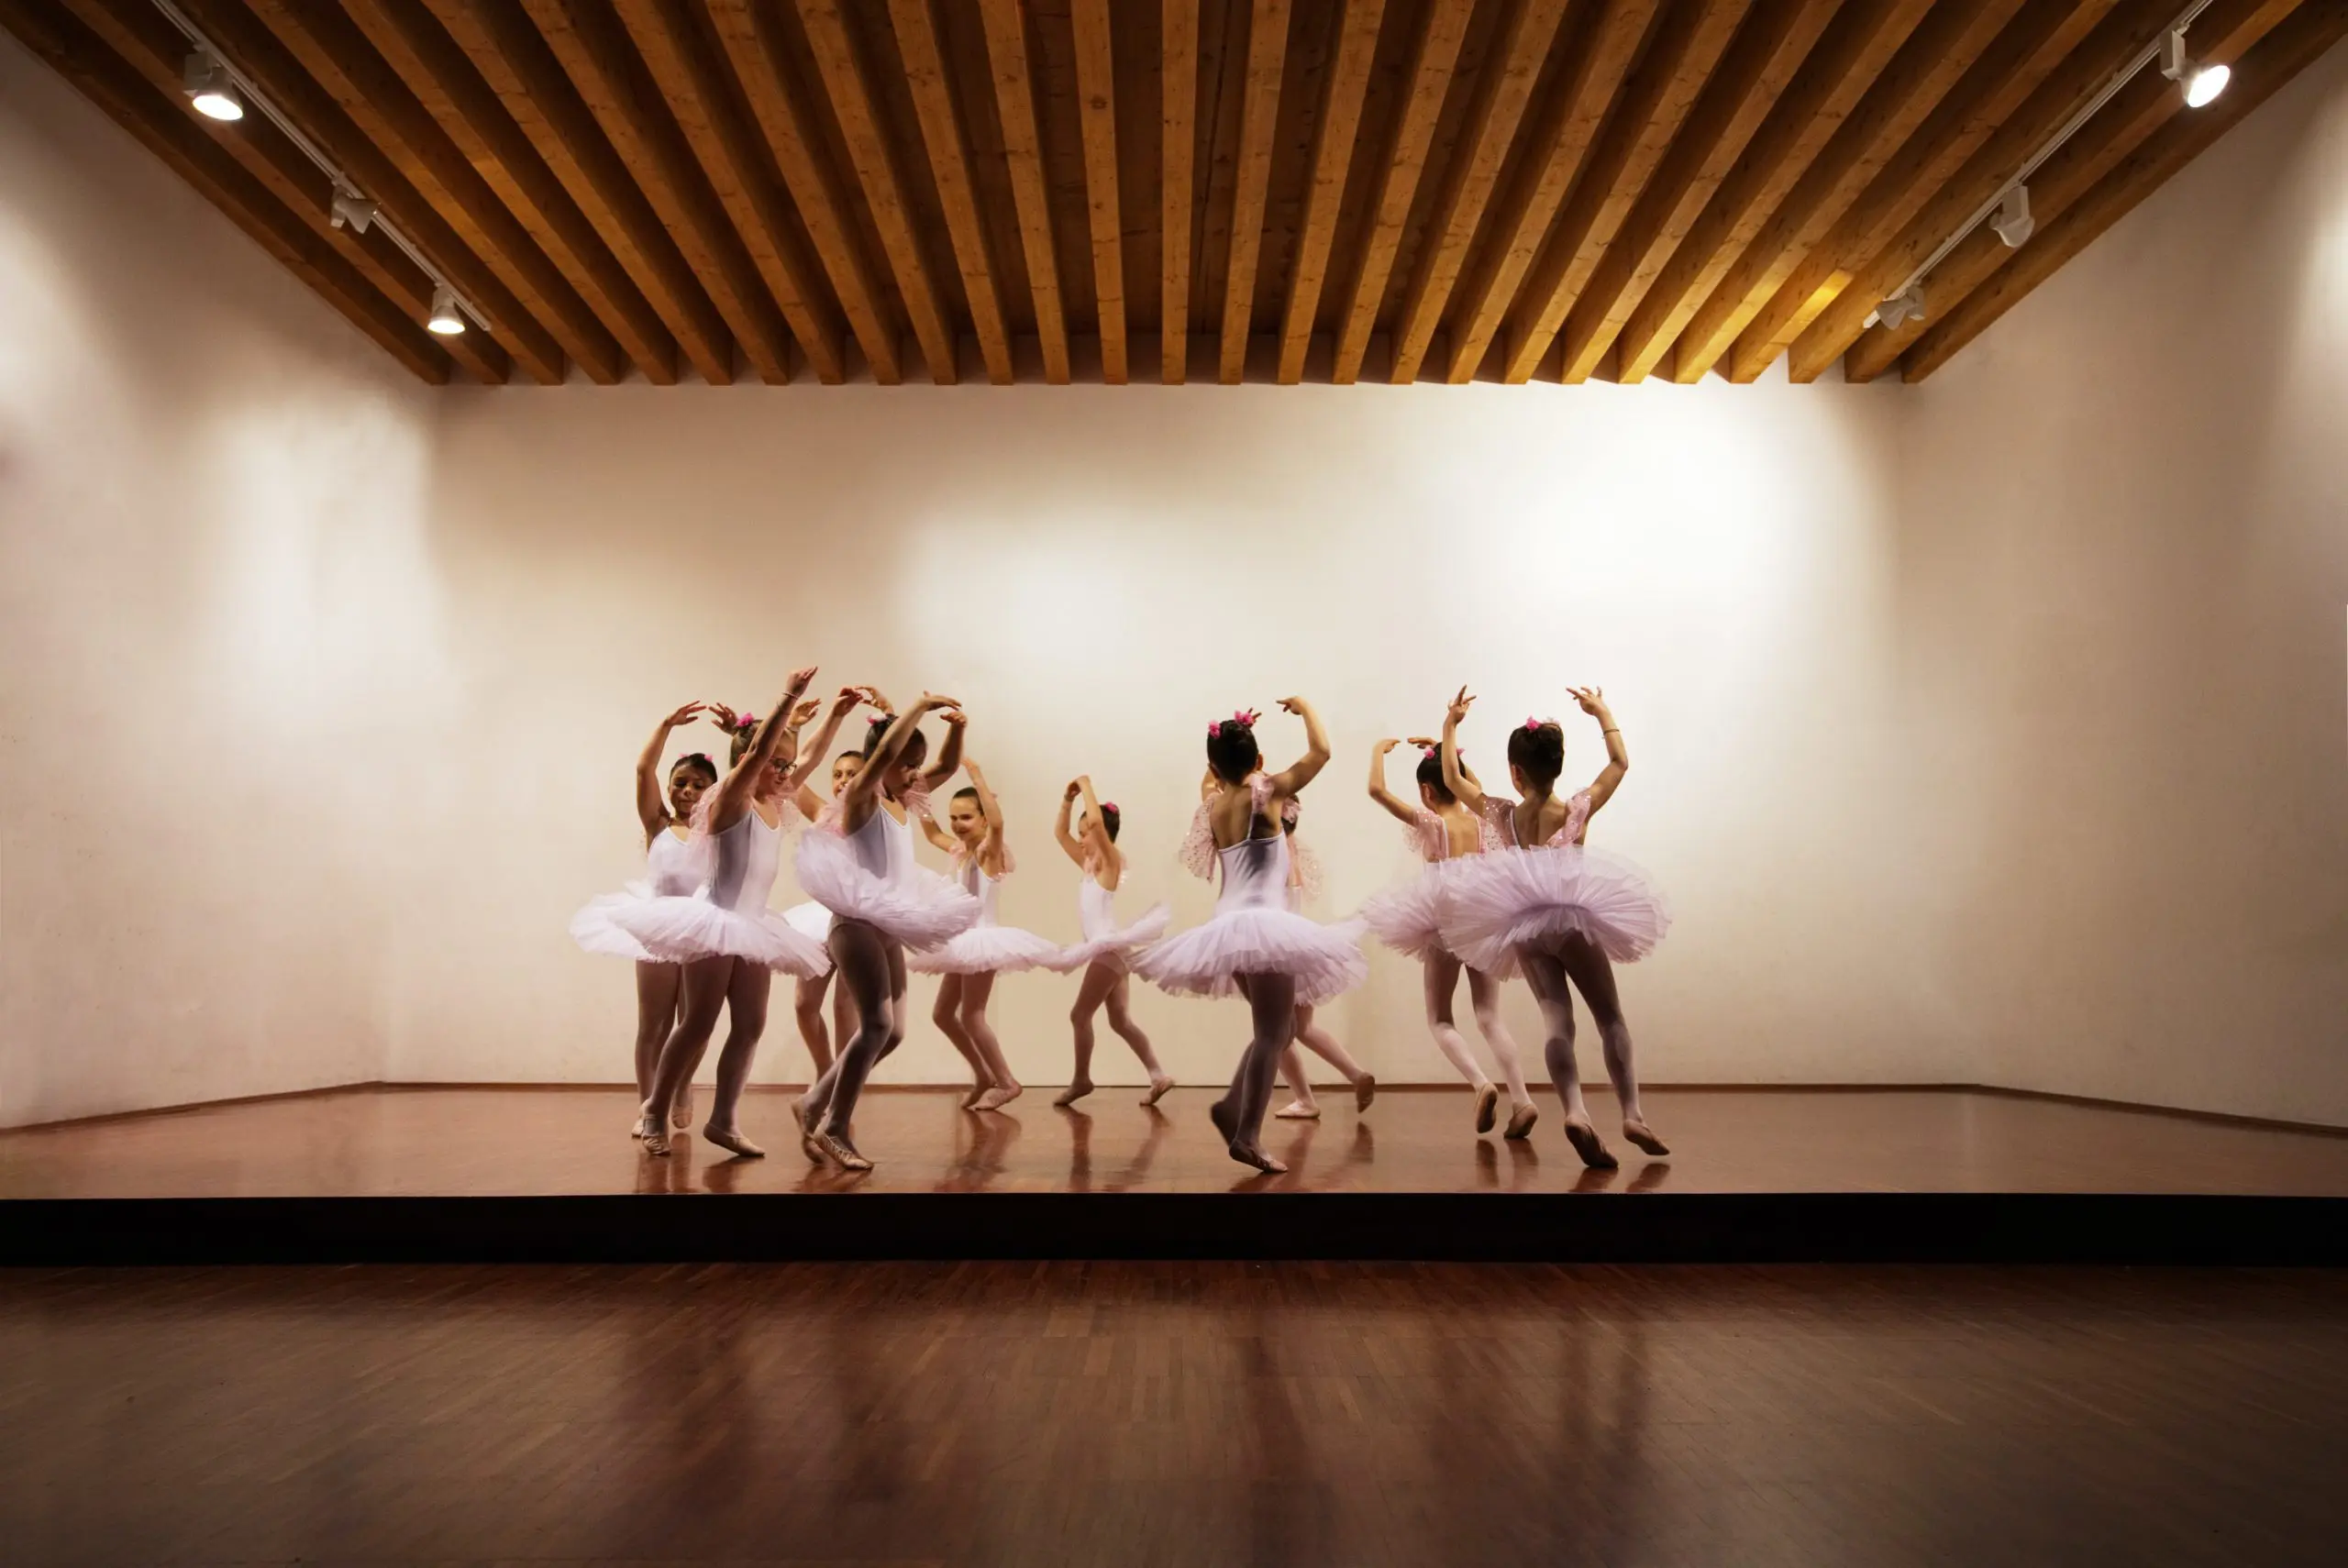 ballet class practicing in a dance studio